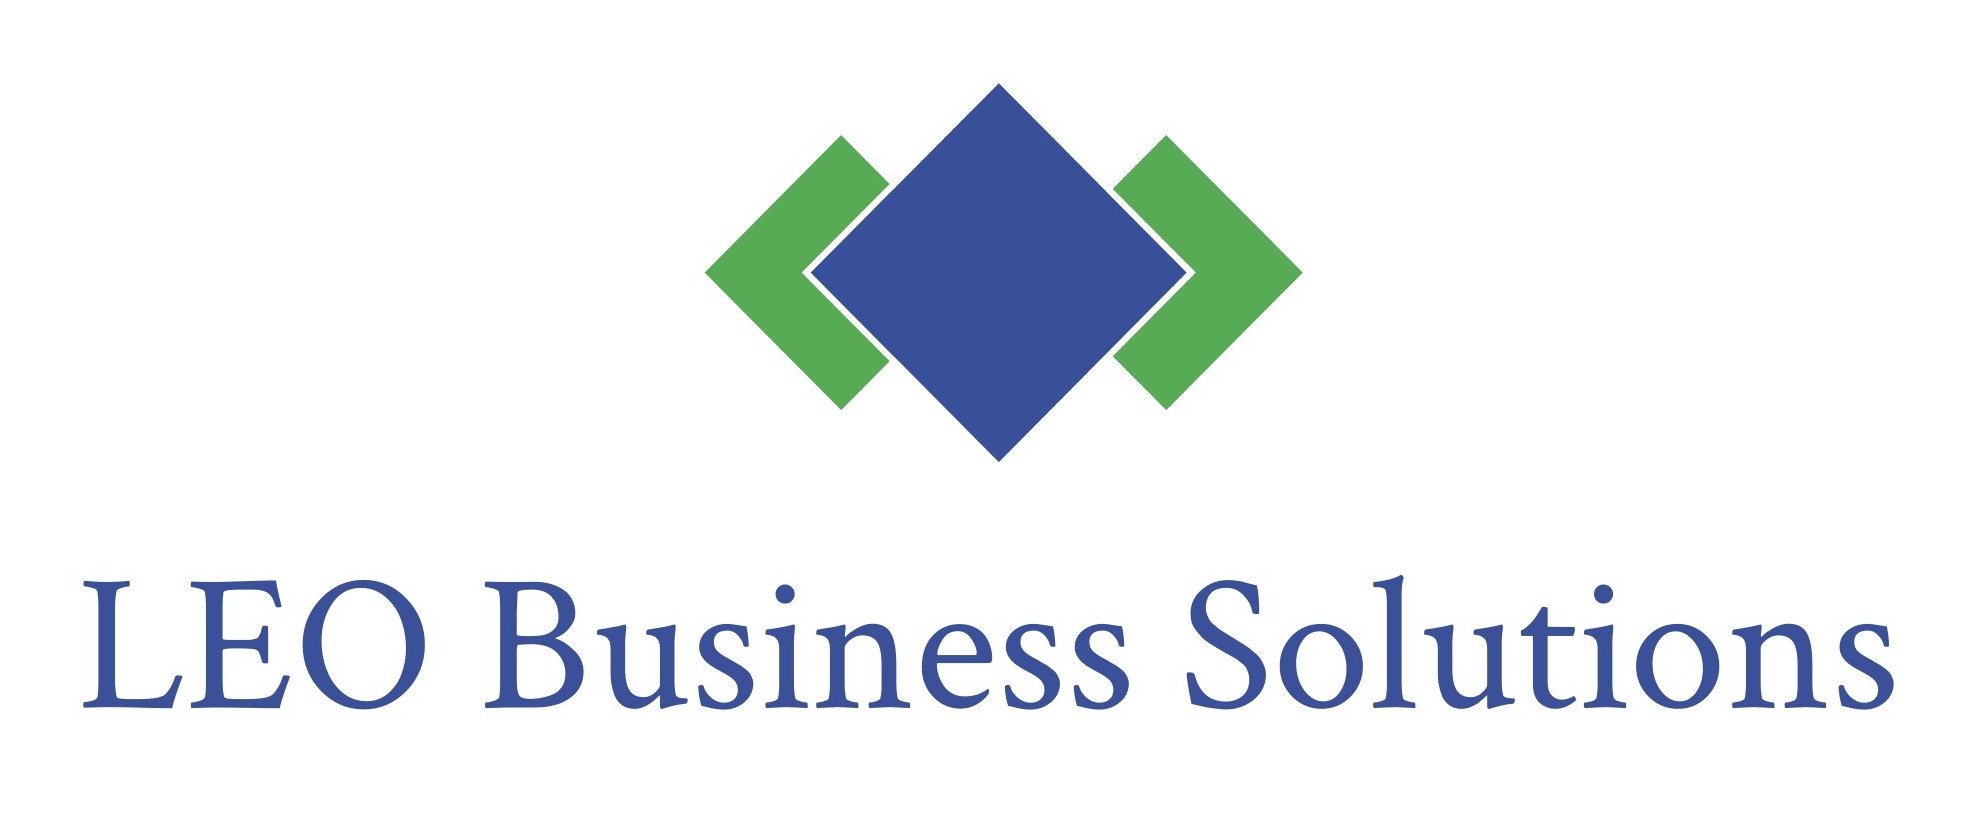 LEO Business Solutions LLC